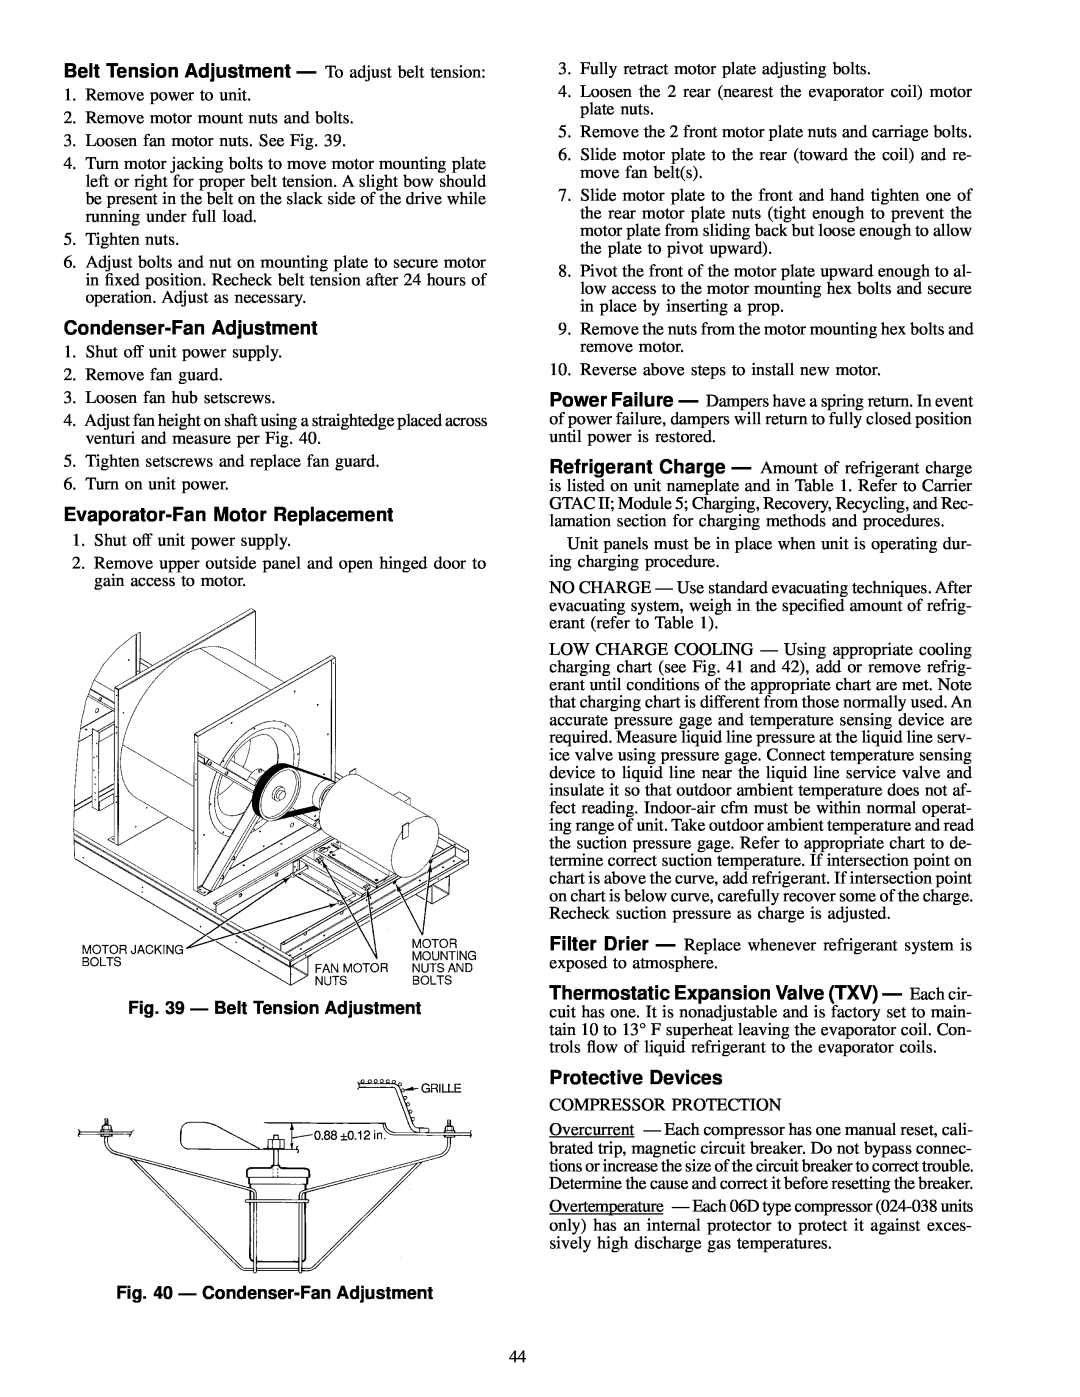 Carrier 50EJ Belt Tension Adjustment Ð To adjust belt tension, Condenser-FanAdjustment, Evaporator-FanMotor Replacement 